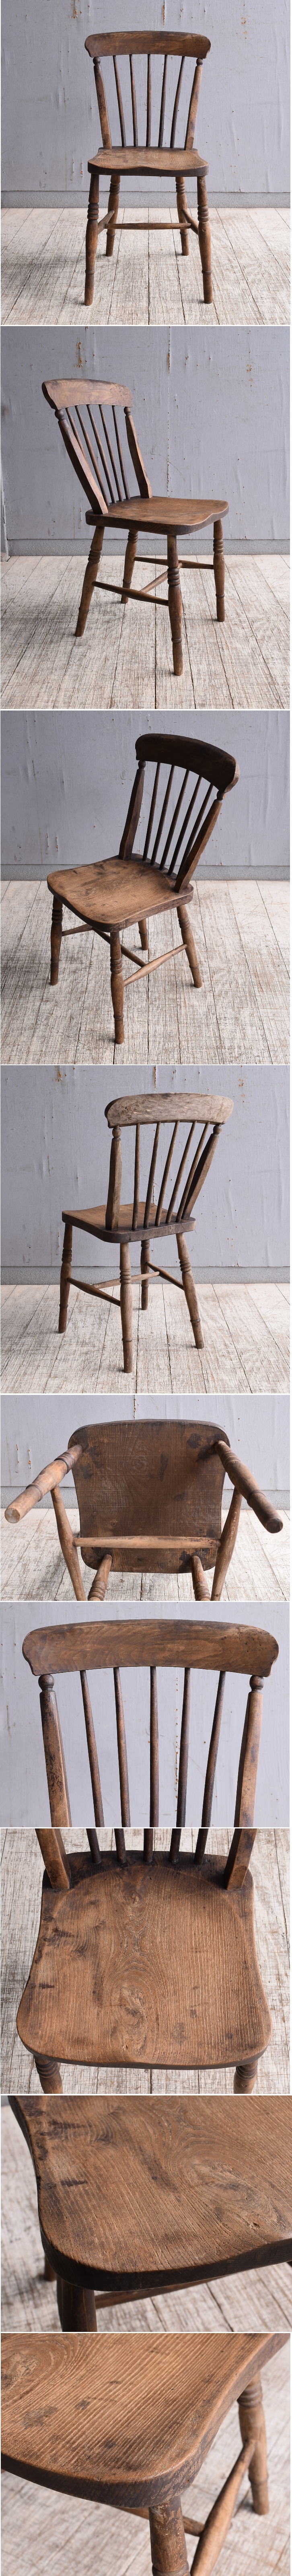 イギリス アンティーク家具 キッチンチェア 椅子 10138